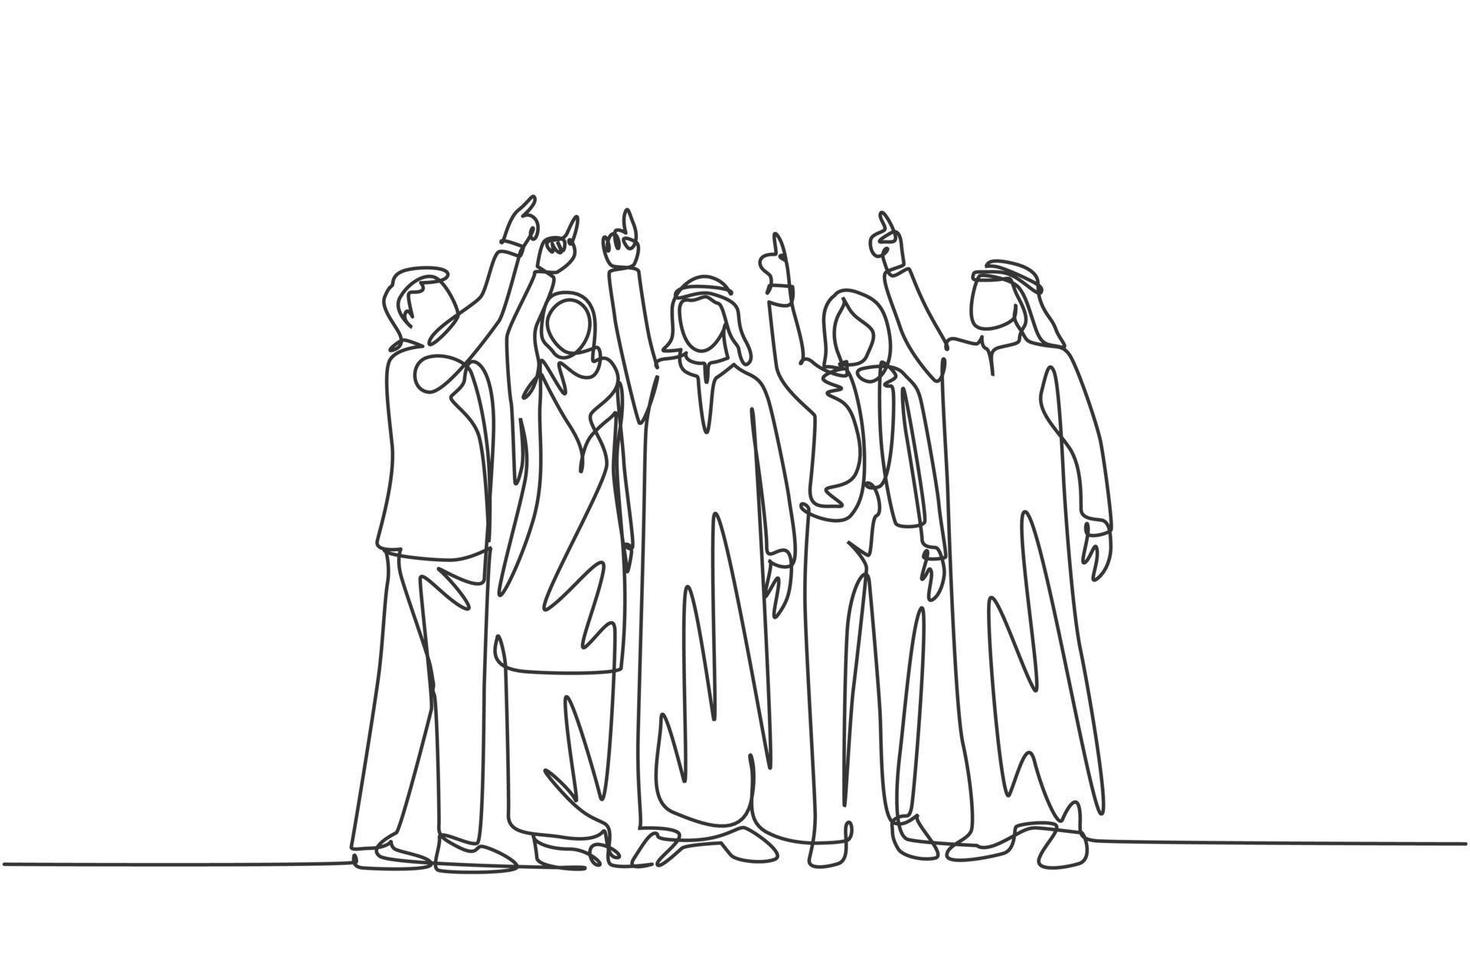 dibujo de una sola línea continua de jóvenes gerentes musulmanes masculinos y femeninos apuntando con el dedo hacia el cielo. tela árabe del medio oriente shmagh, kandura, hijab, bata. Ilustración de vector de diseño de dibujo de una línea